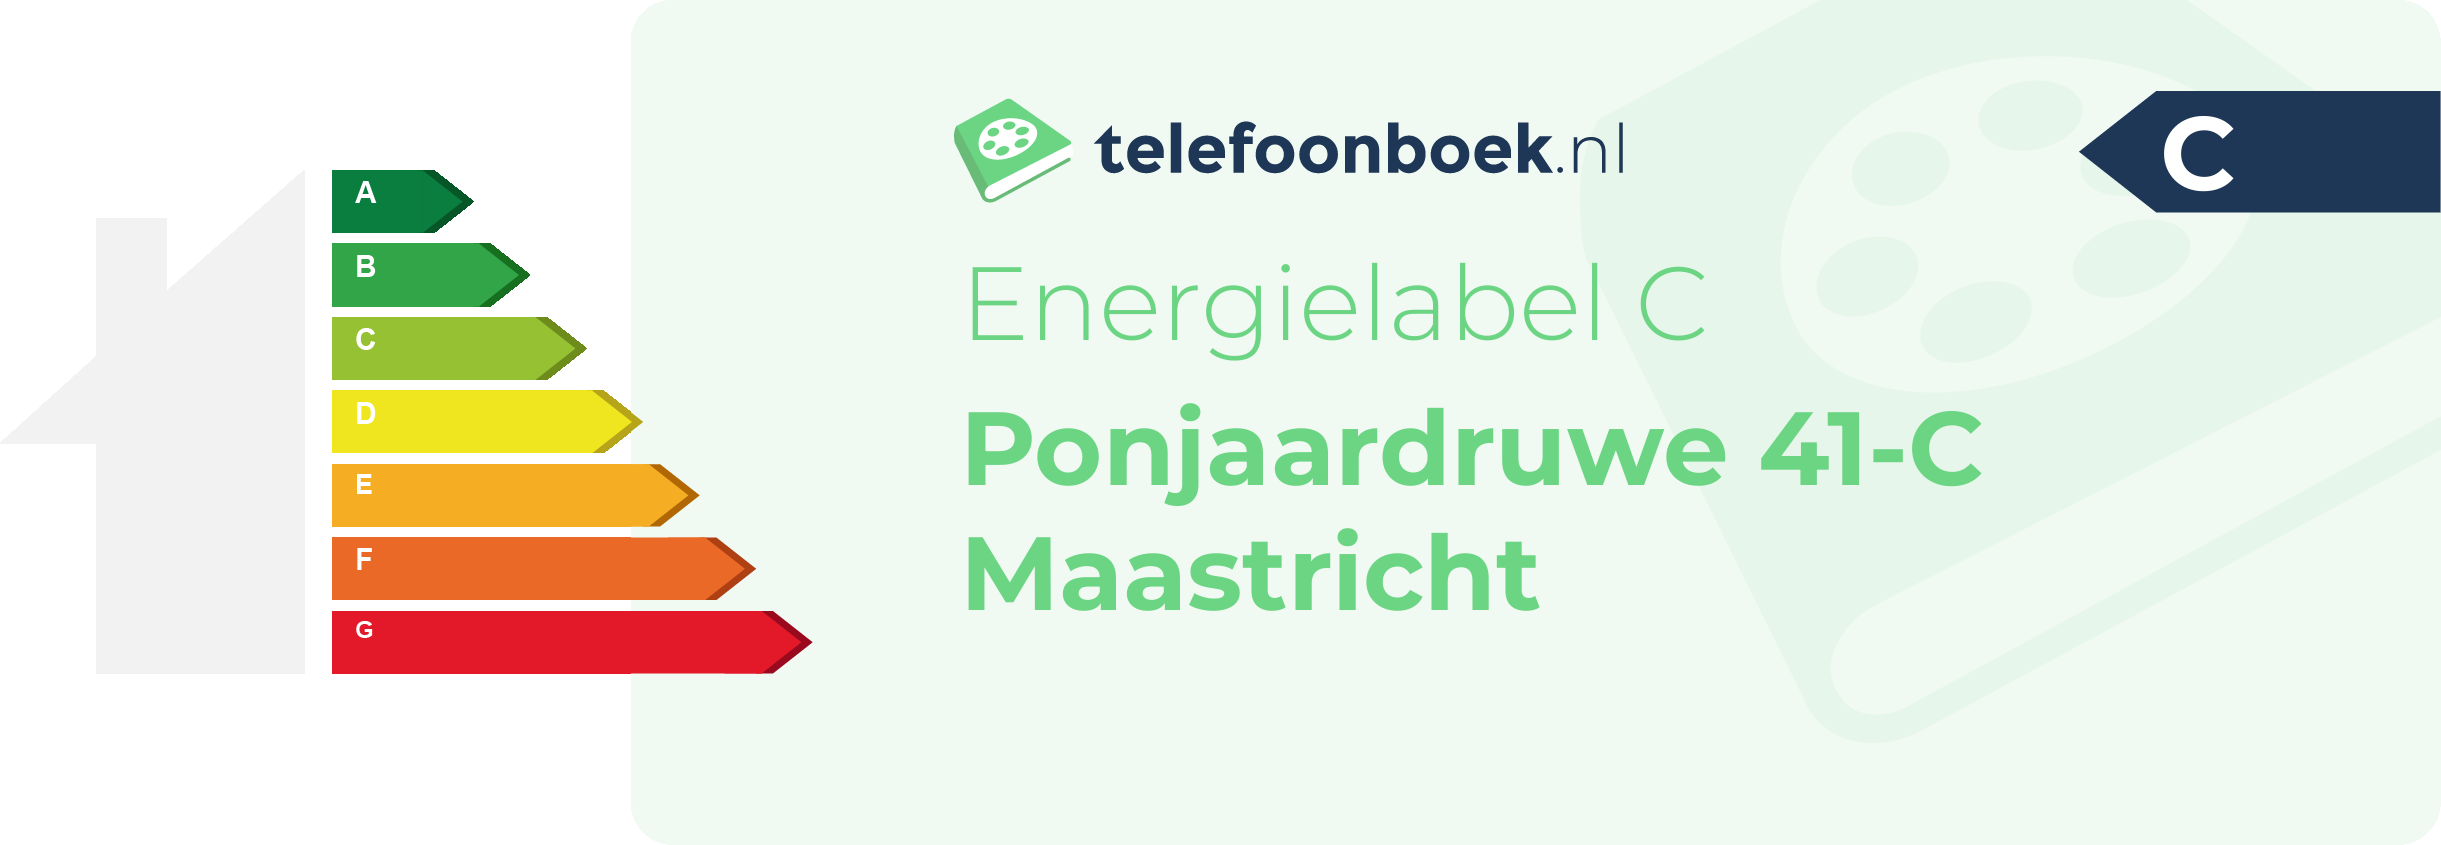 Energielabel Ponjaardruwe 41-C Maastricht